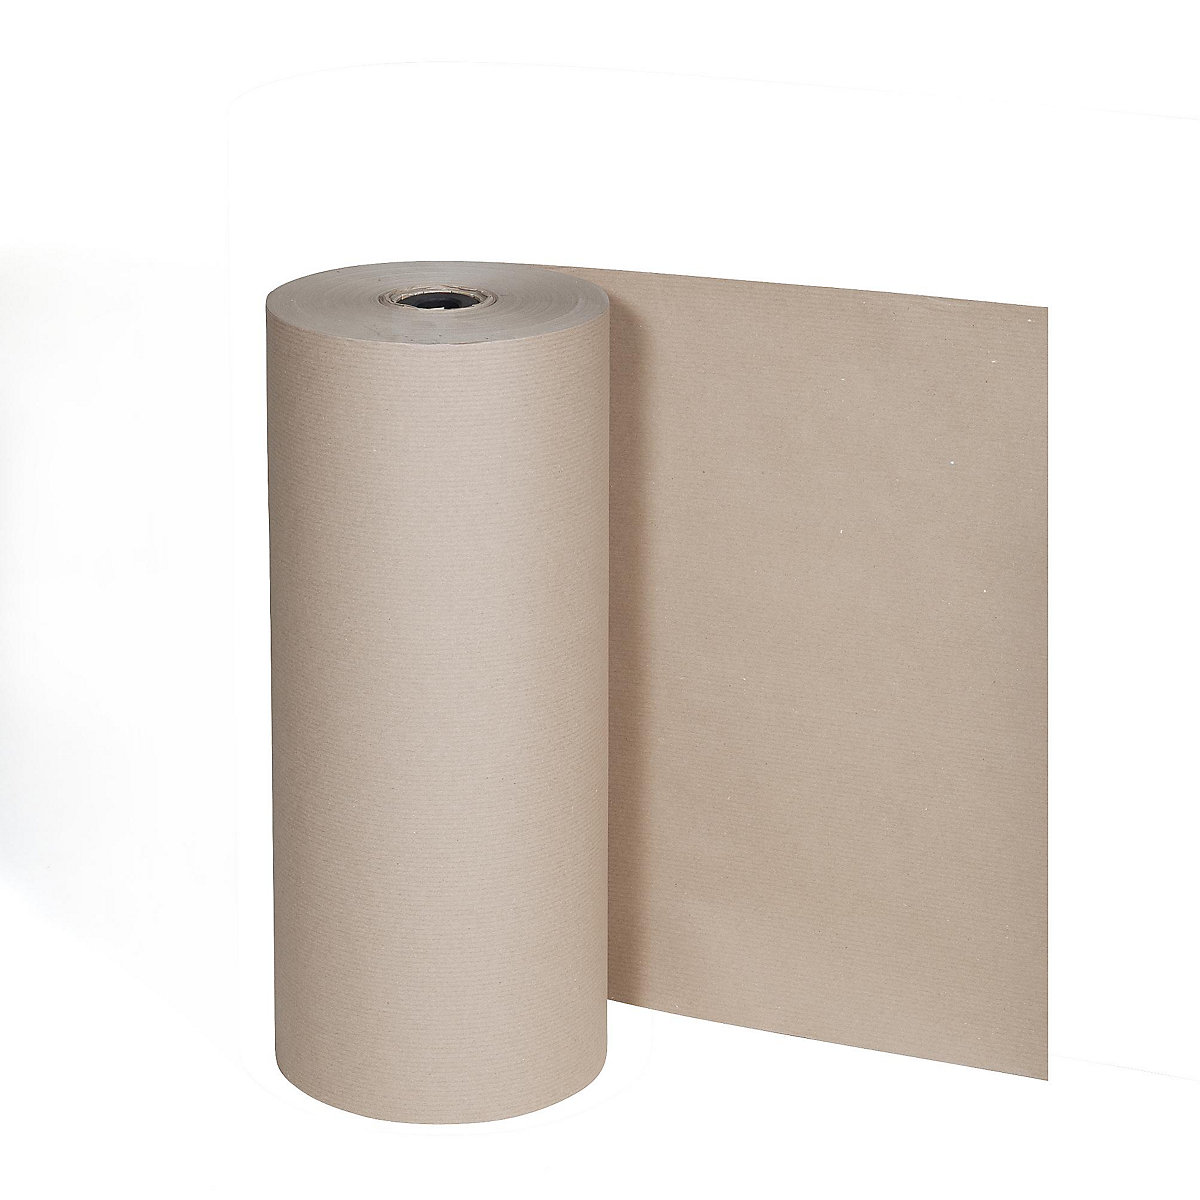 Pakpapier, 80 g/m², grote rol voor verticale standaard, 1250 mm breed-4